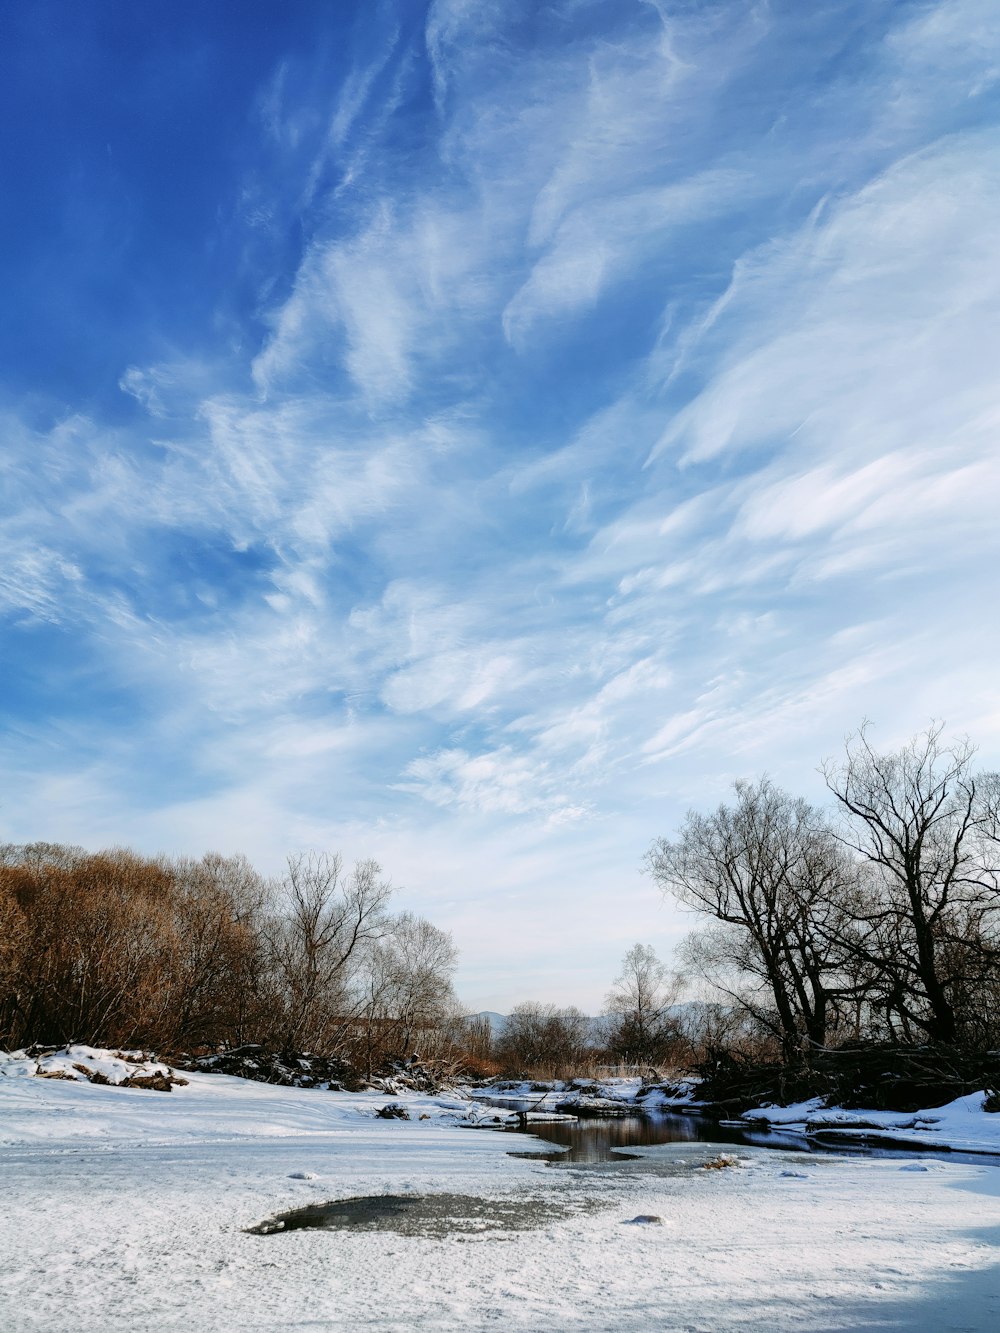 arbres nus sur un sol enneigé sous un ciel nuageux bleu et blanc pendant la journée